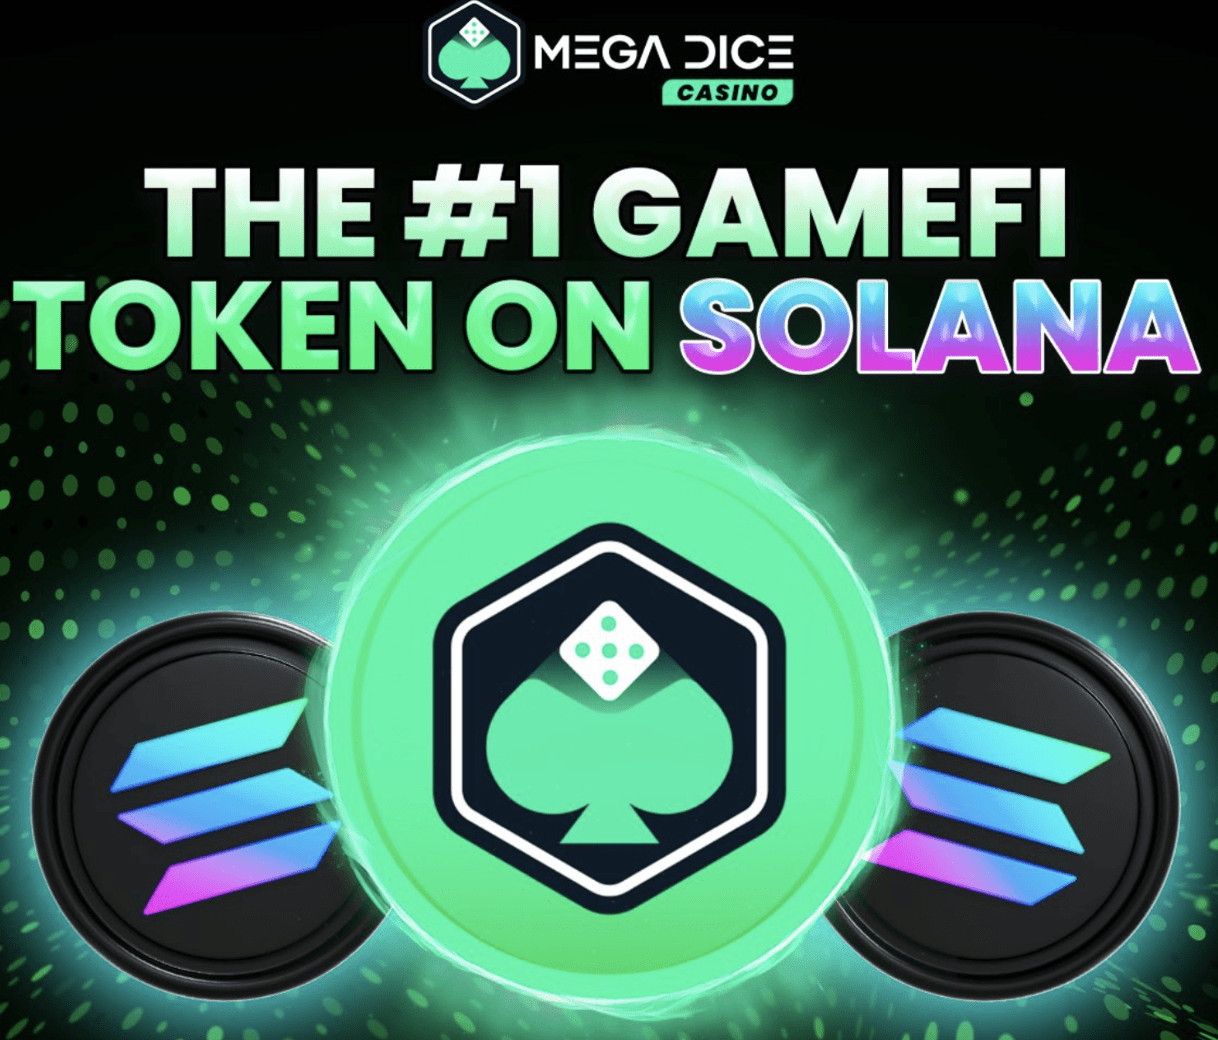 New Solana GameFi Token ‘Mega Dice’ Raises $1 Million In ICO - Next 100x Crypto?